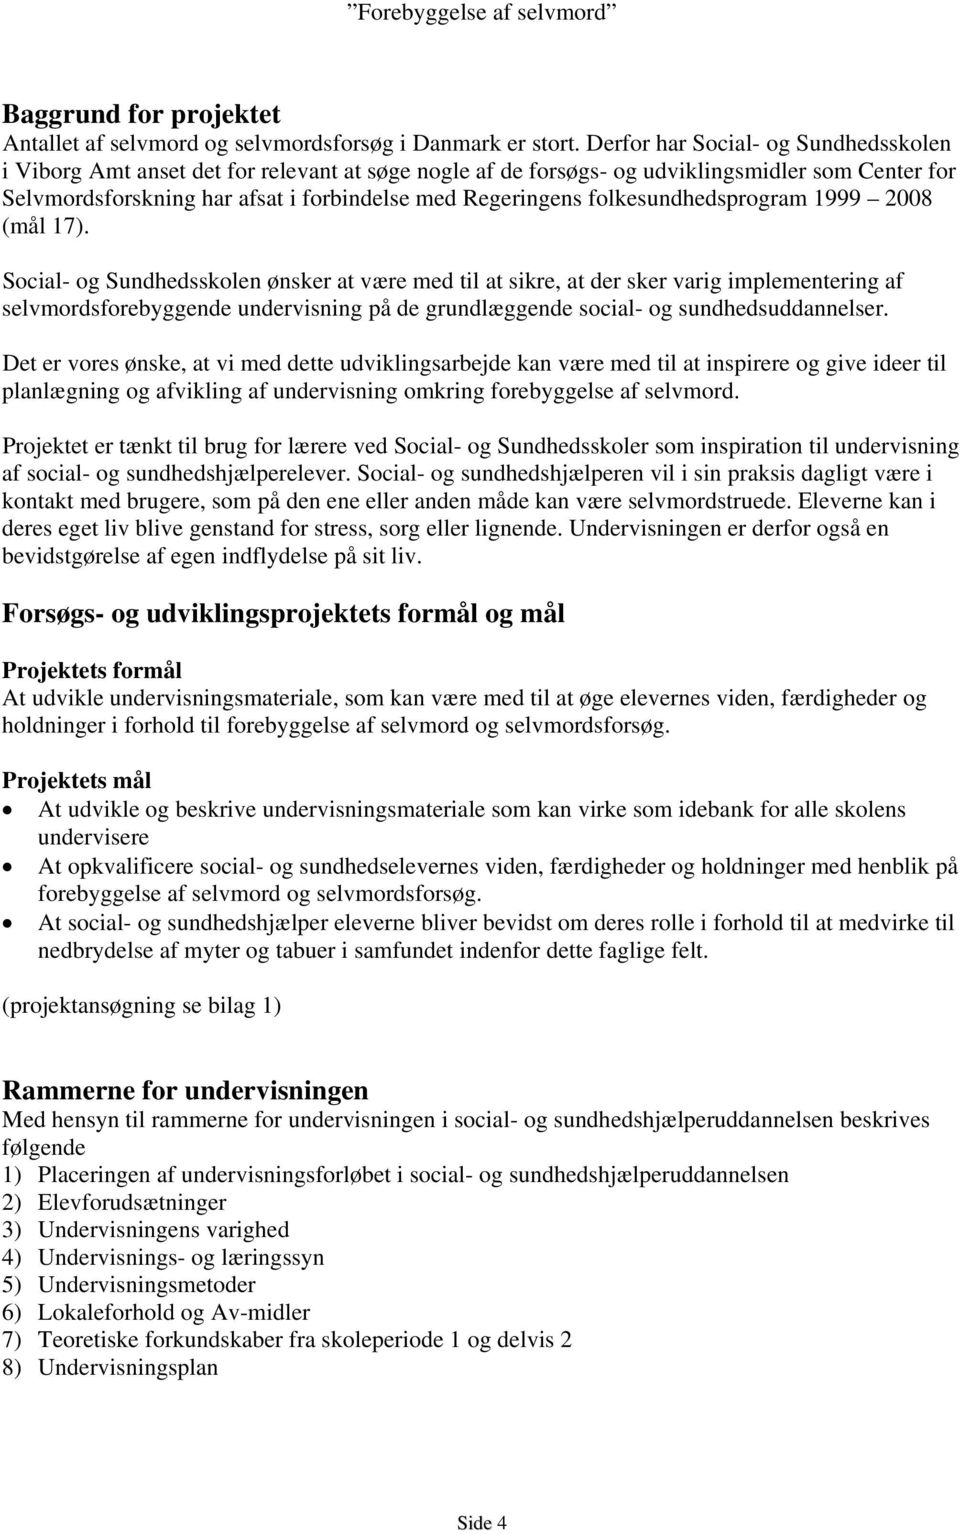 folkesundhedsprogram 1999 2008 (mål 17).